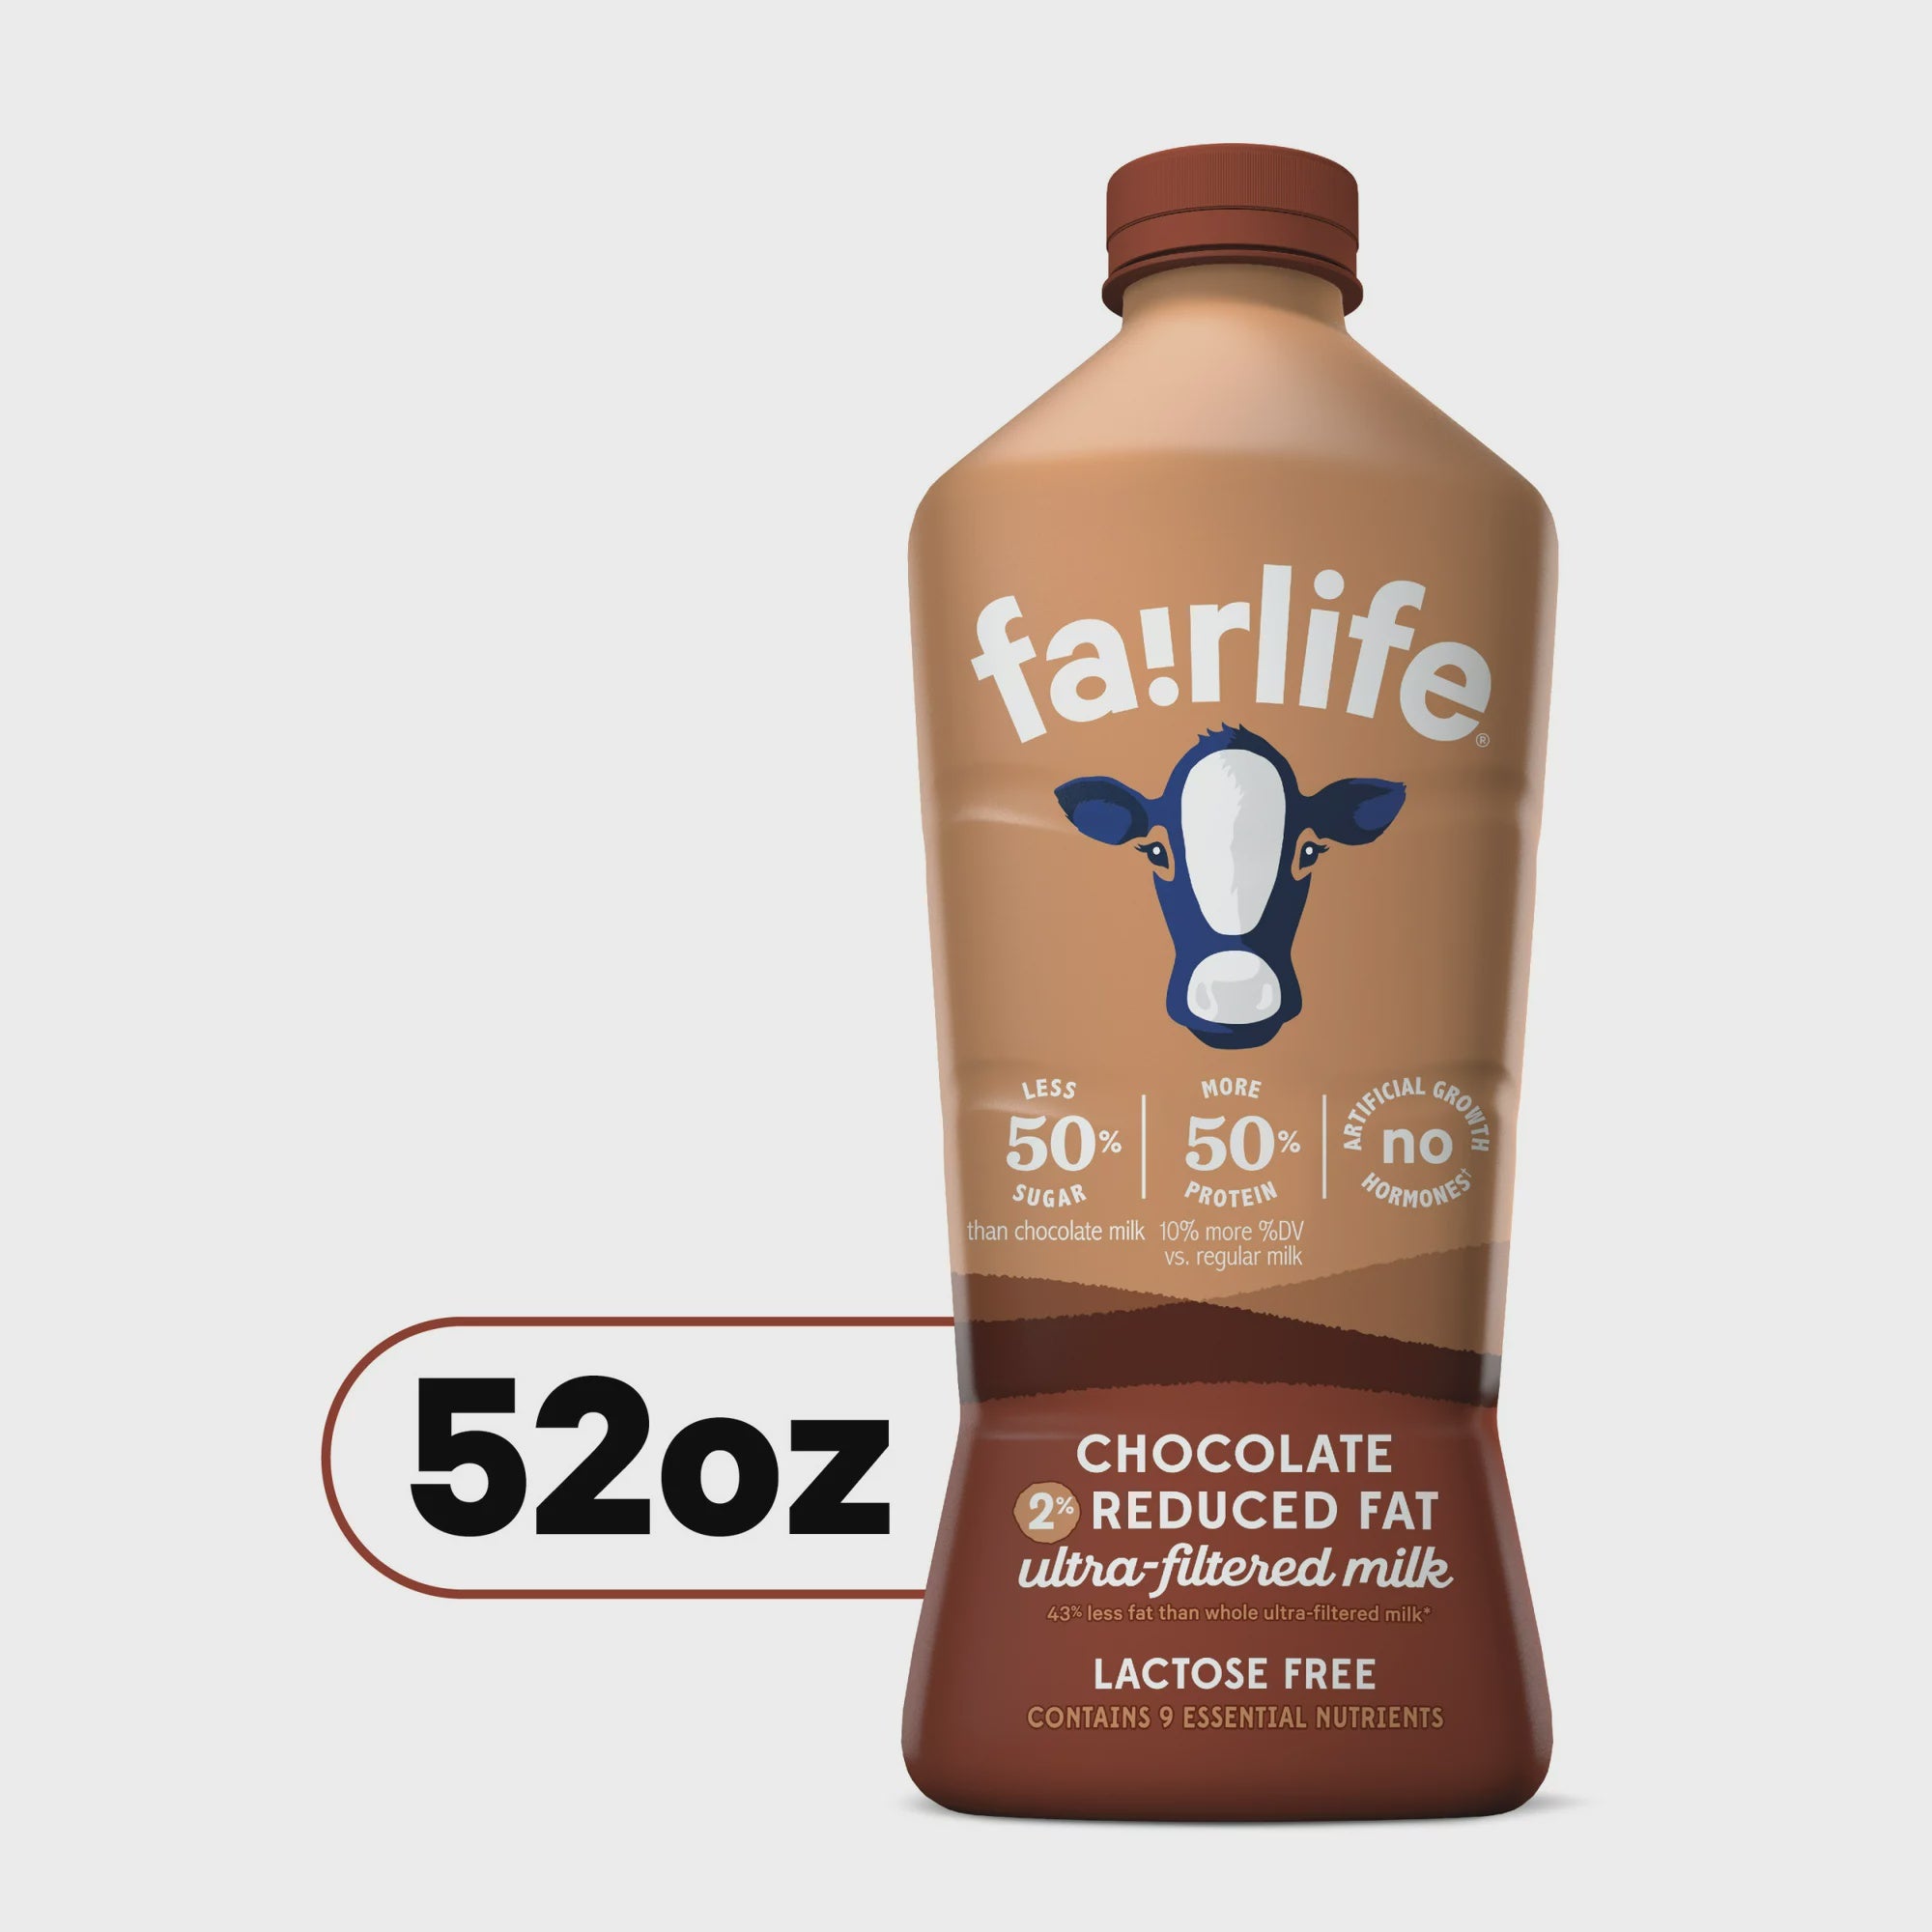 Fairlife 2% Lactose Free Chocolate Milk, 52 oz